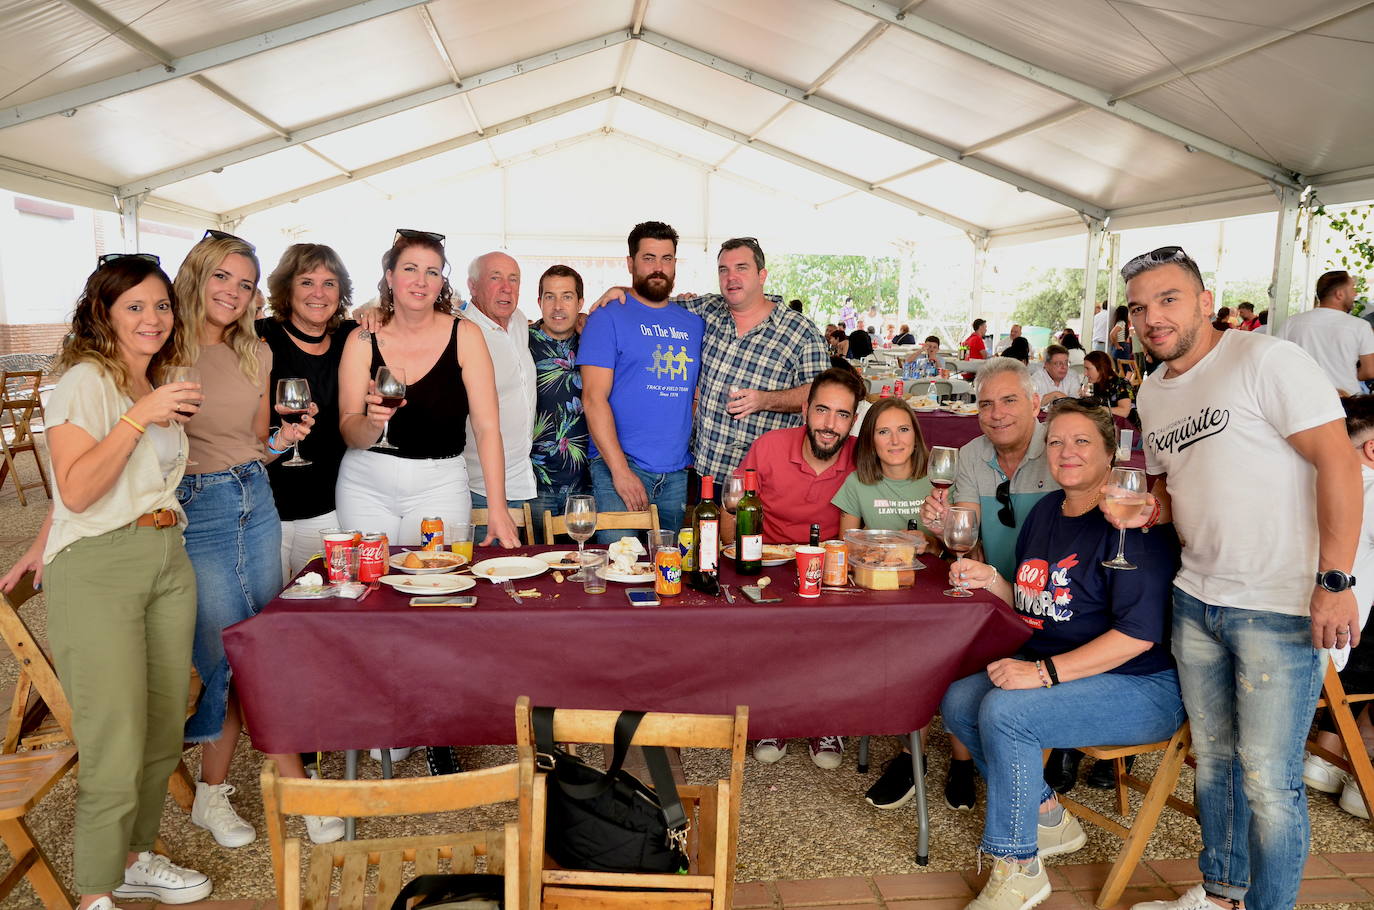 La Fiesta de la Vendimia, un encuentro gastronómico cada vez más popular en Huétor Vega.